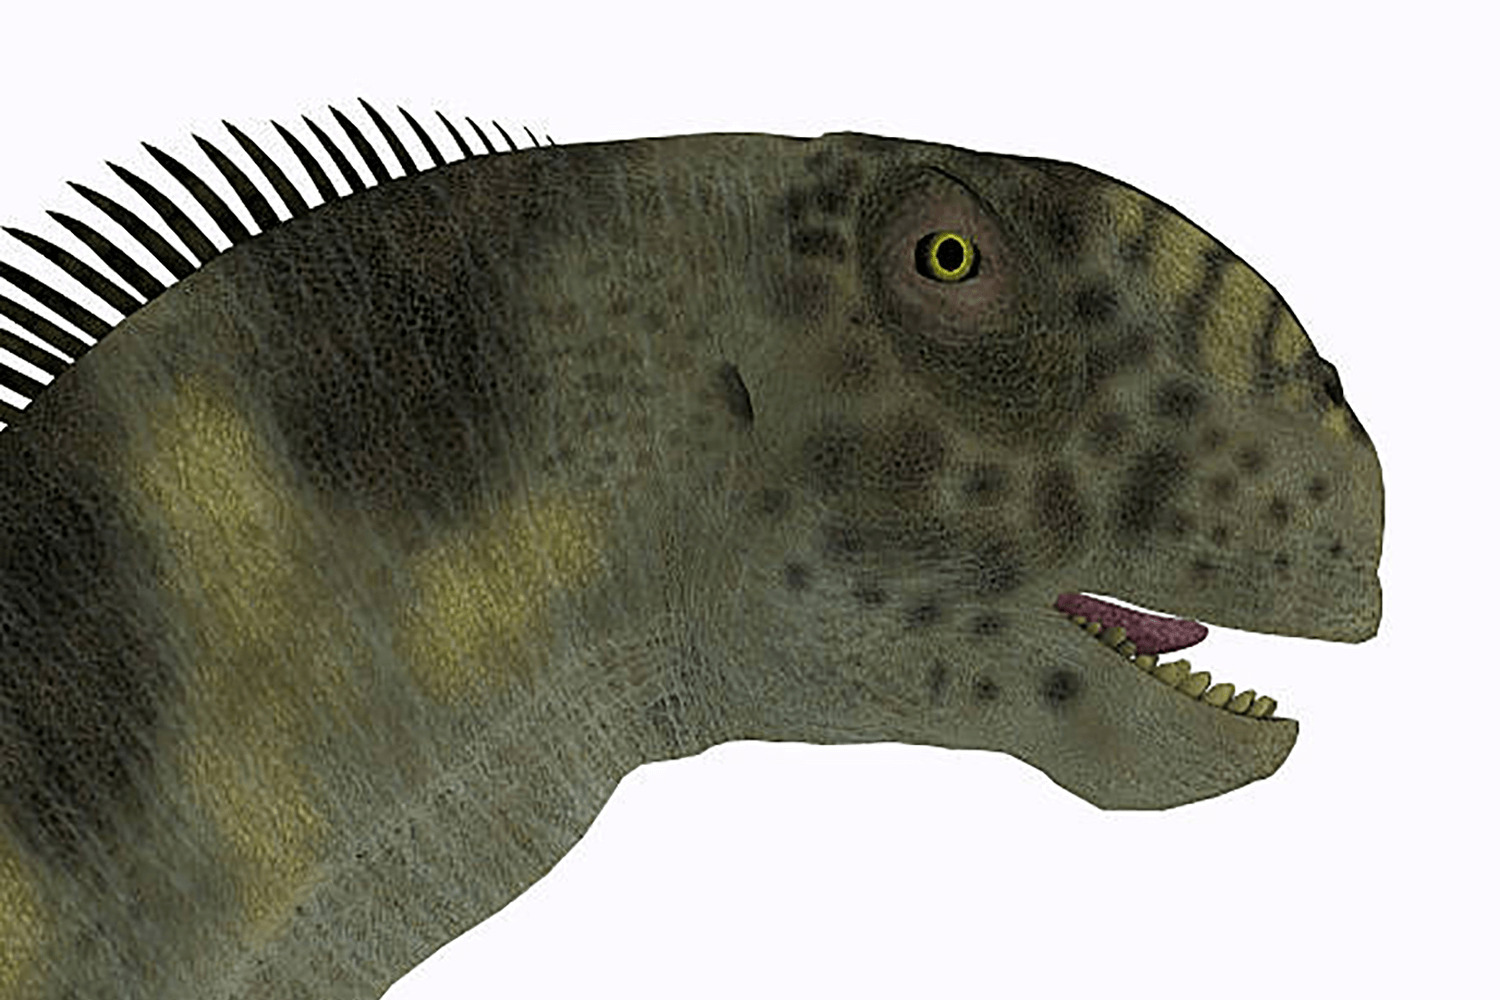 カマラサウルス | 恐竜博物館.web